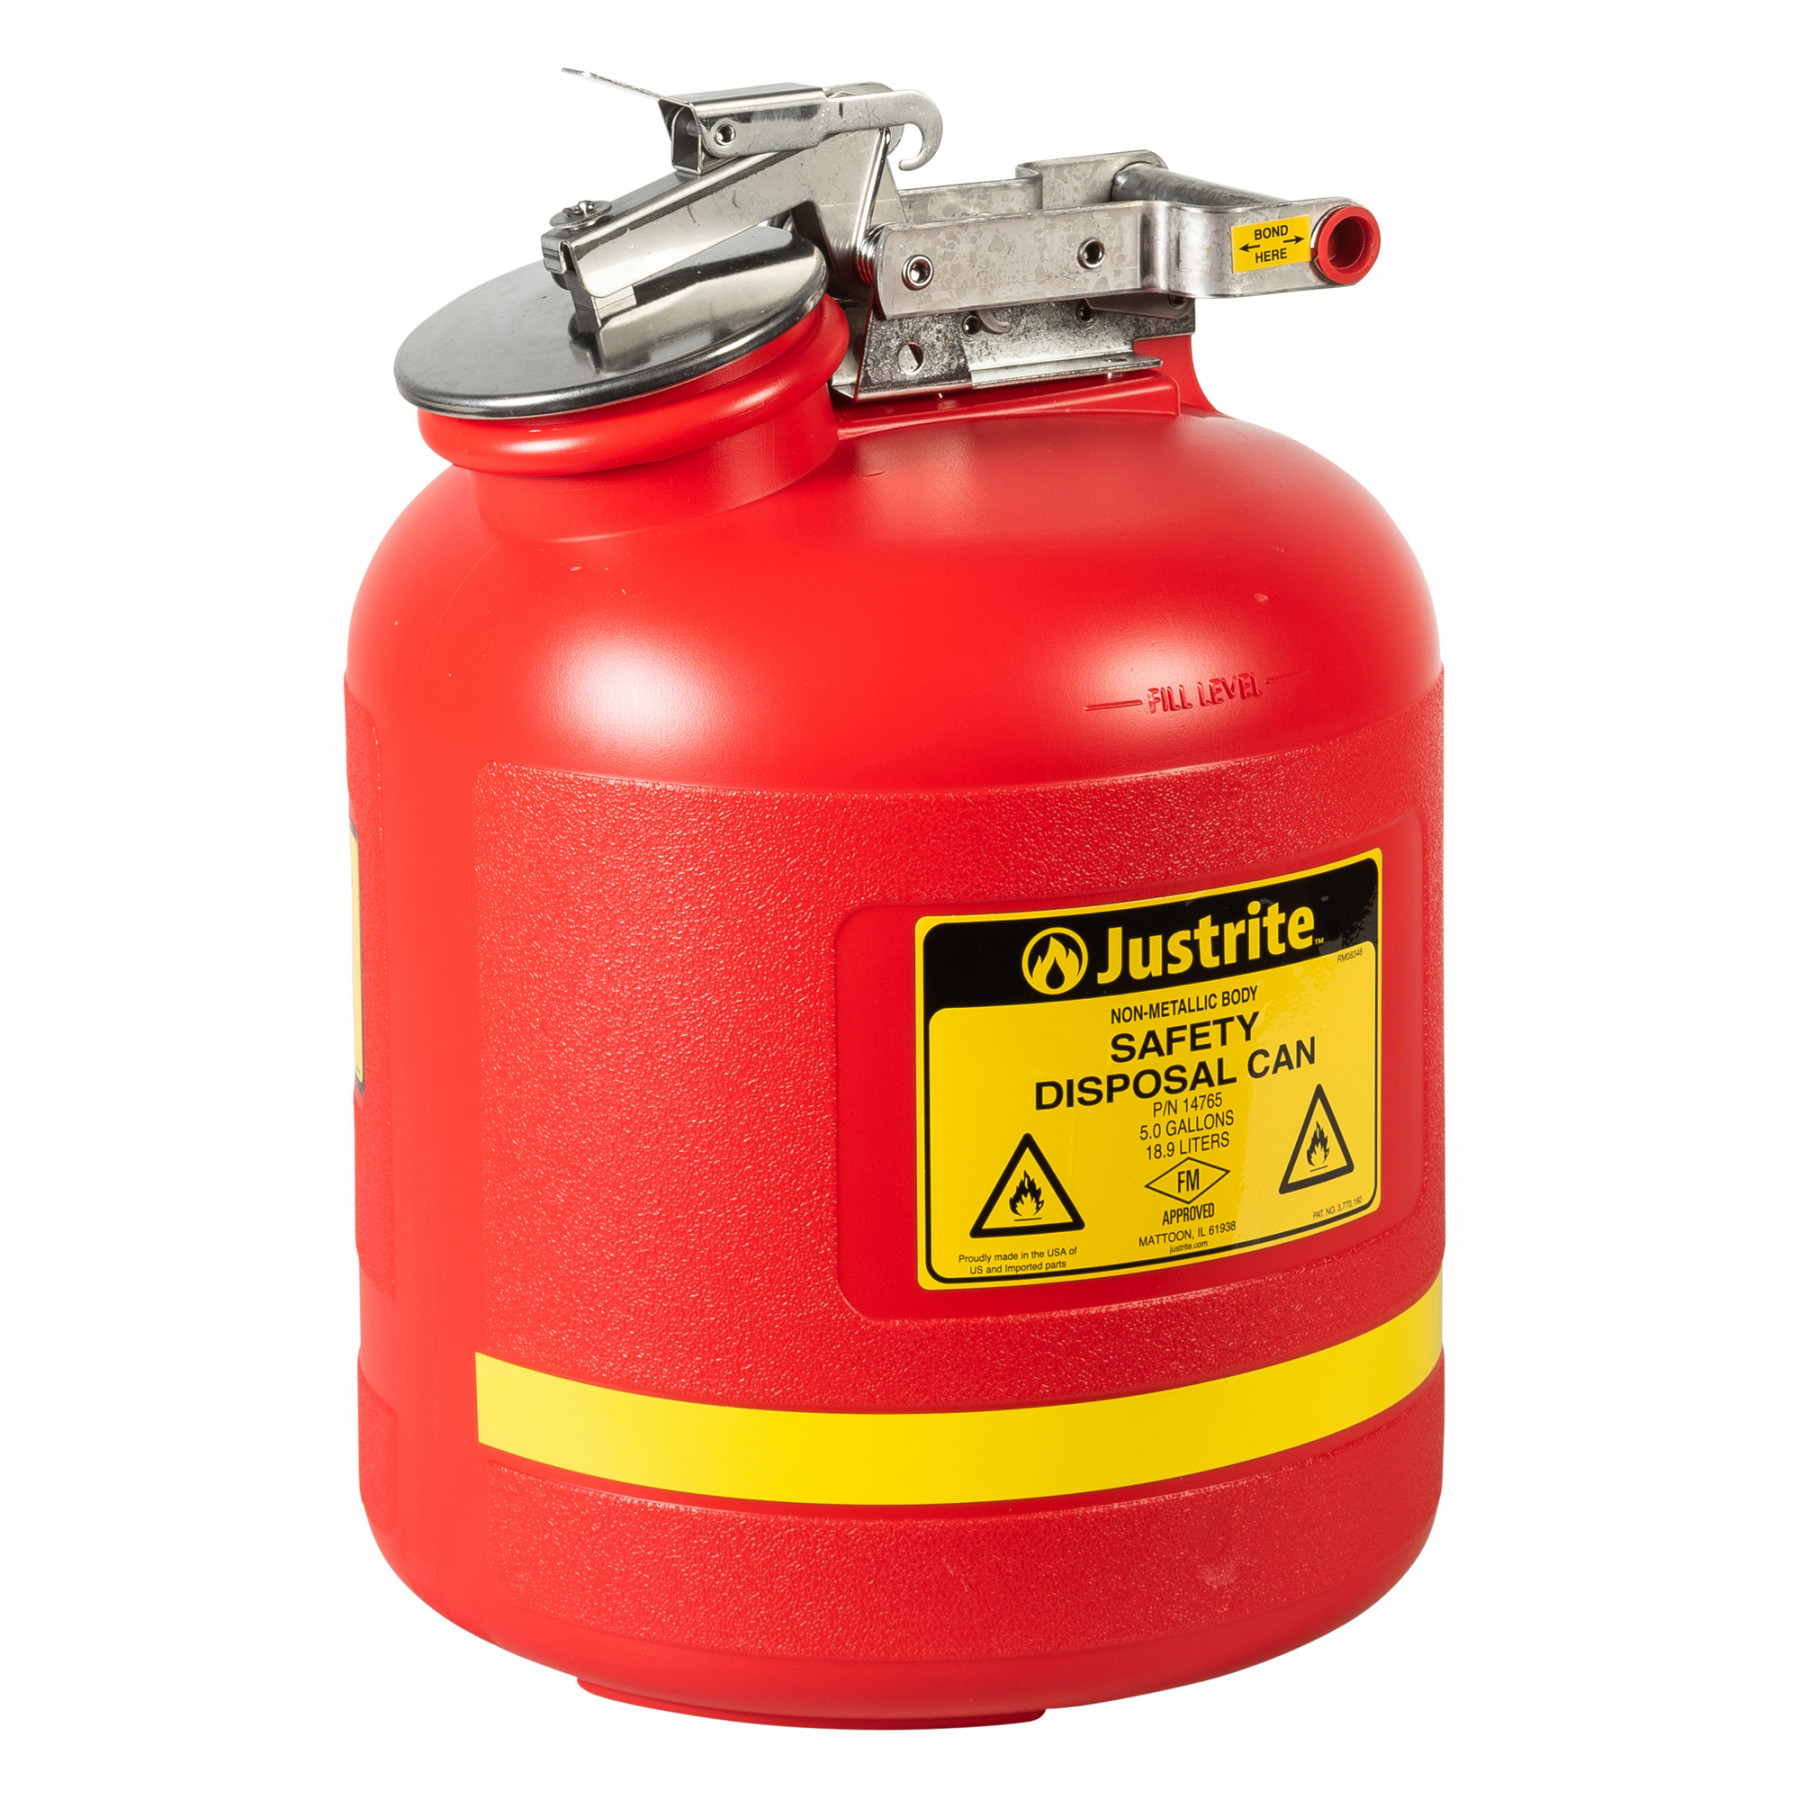 HDPE Sicherheits-Abfallbehälter 19 Liter, rot für brennbare Flüssigkeiten